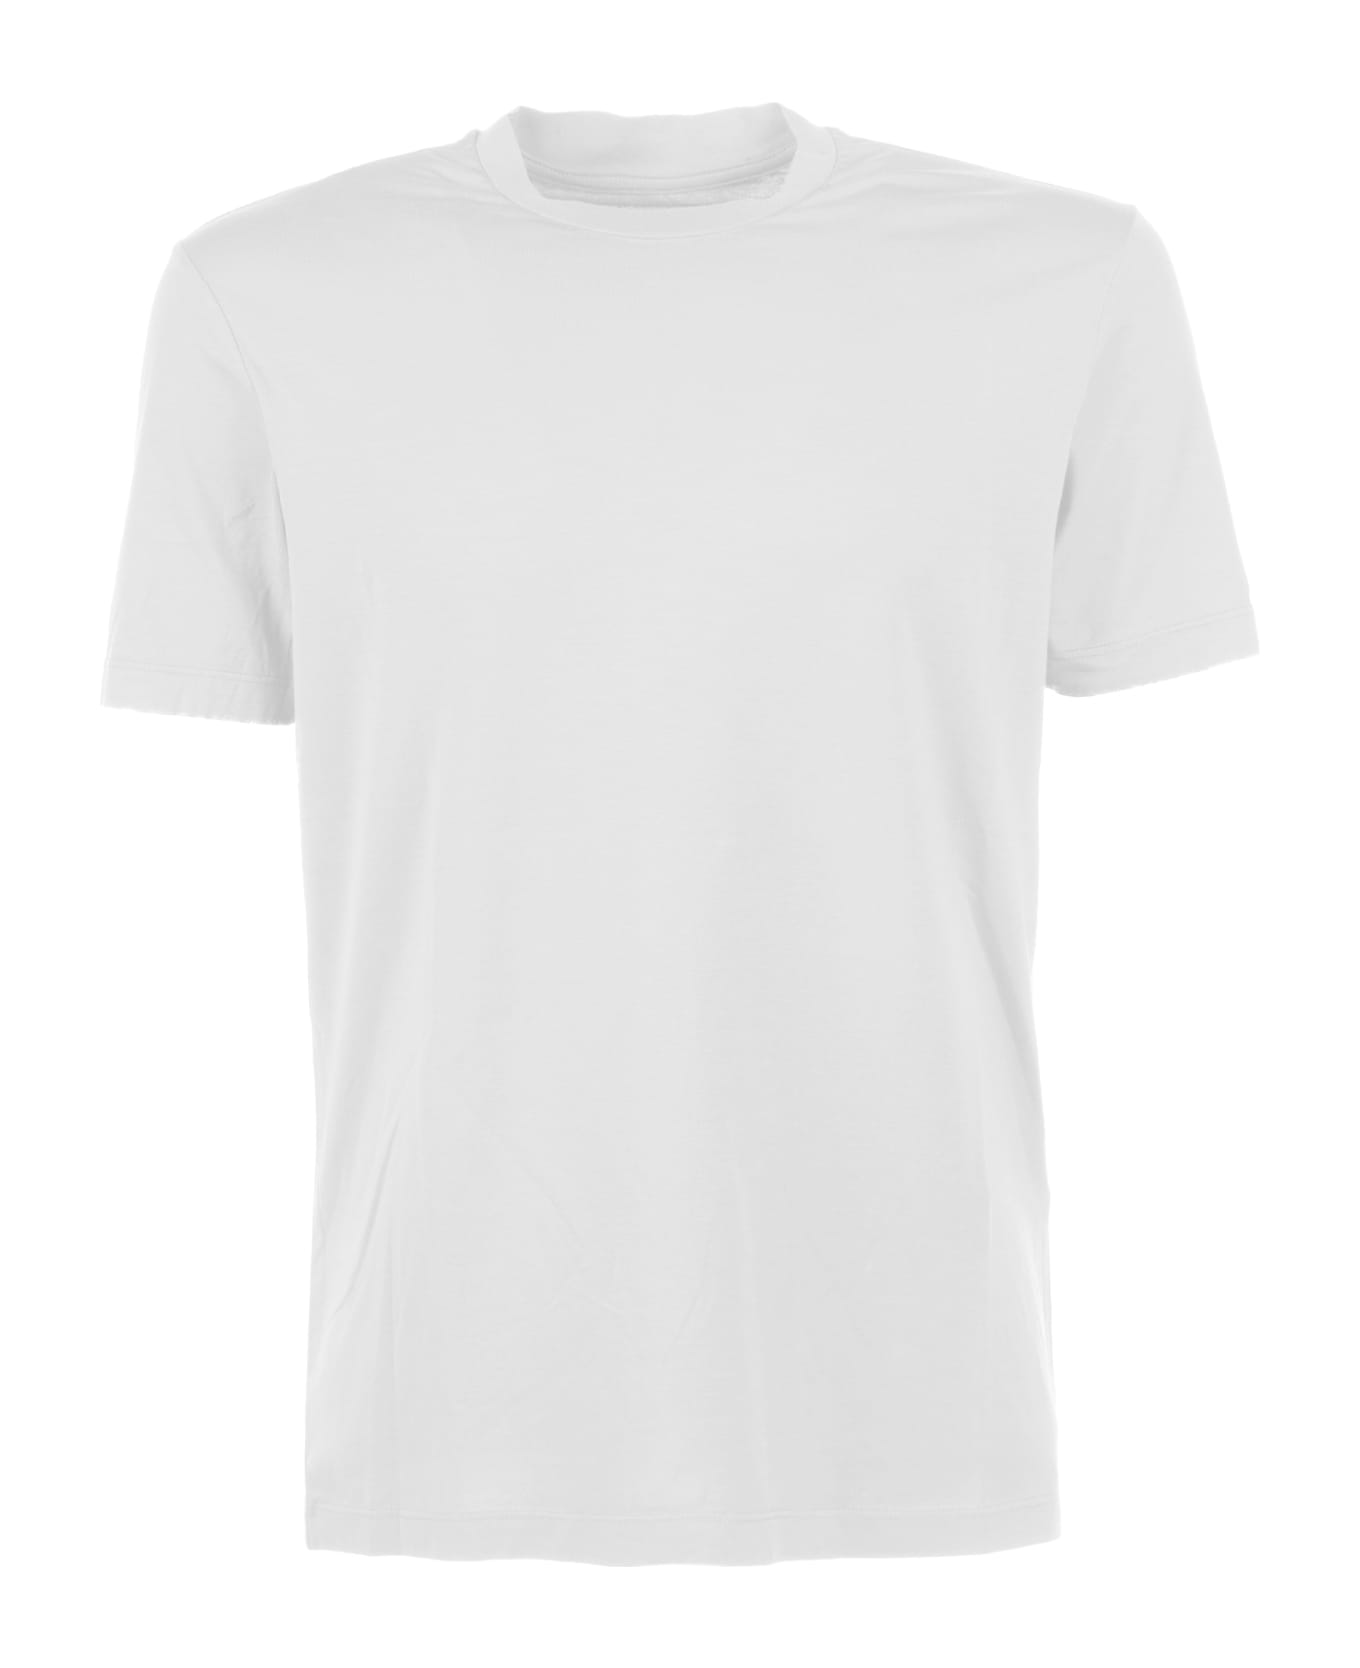 Altea White Cotton T-shirt - BIANCO OTTICO シャツ